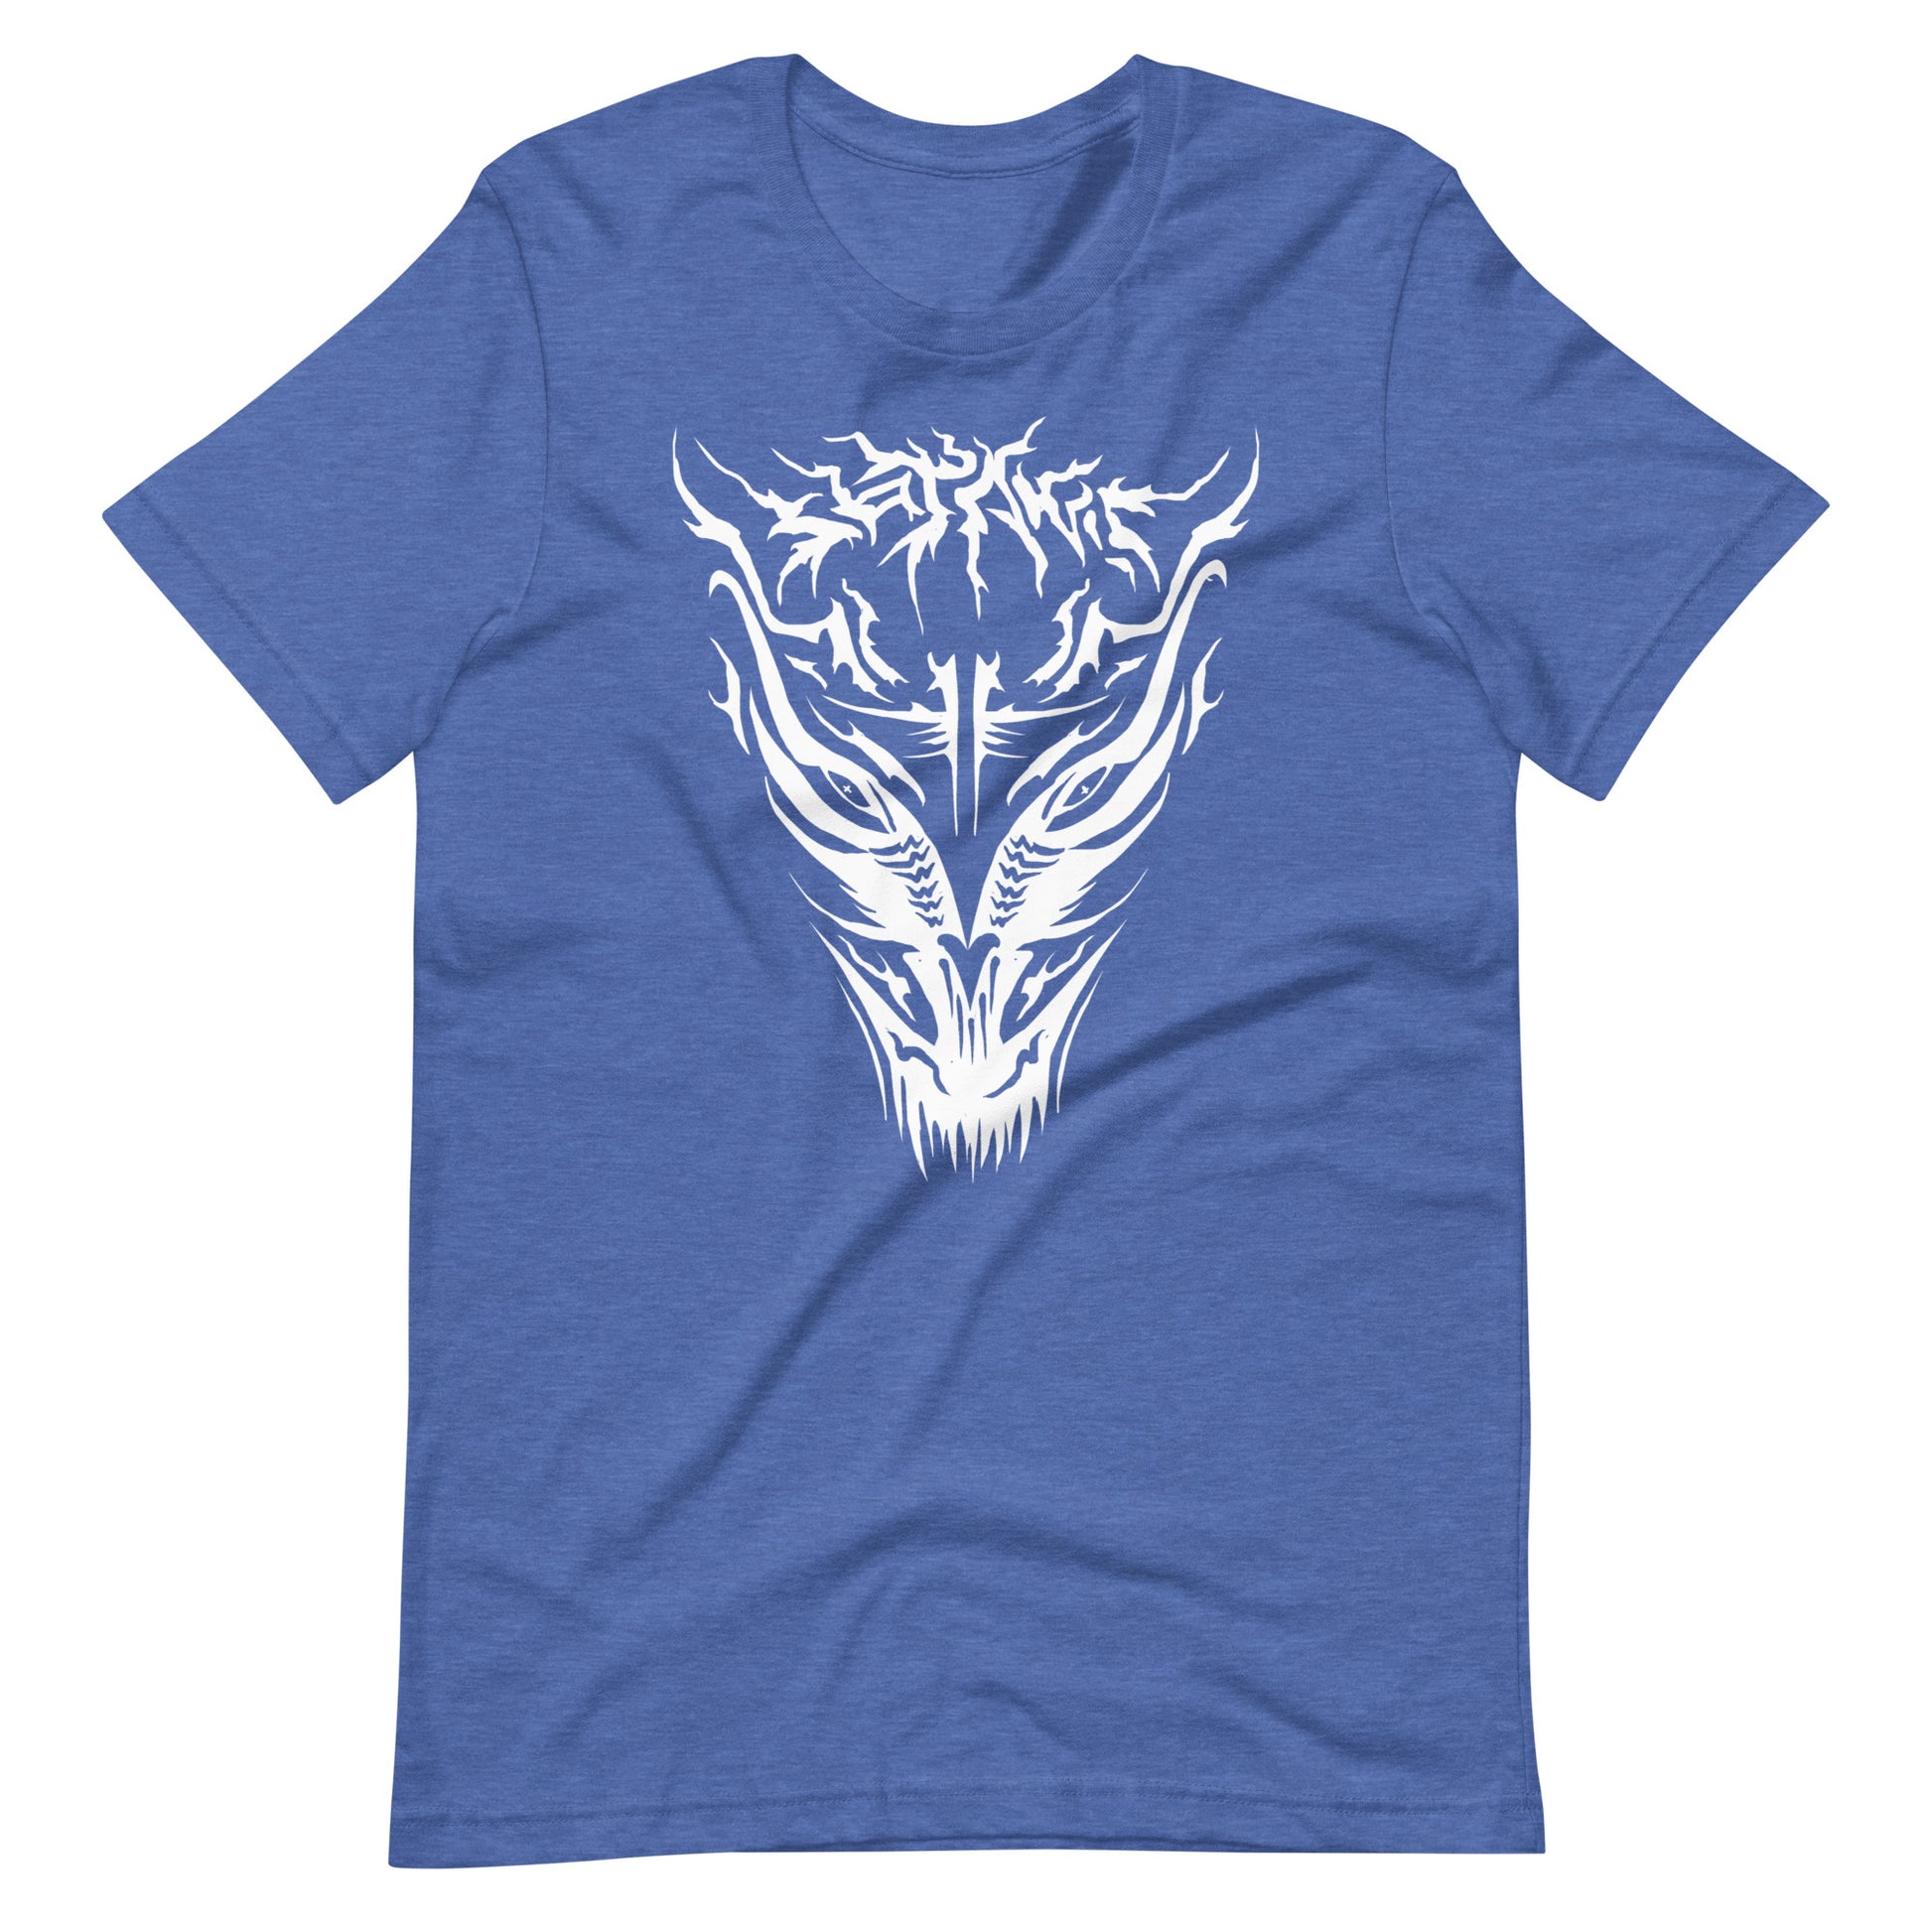 Demon - Men's t-shirt - Heather True Royal Front